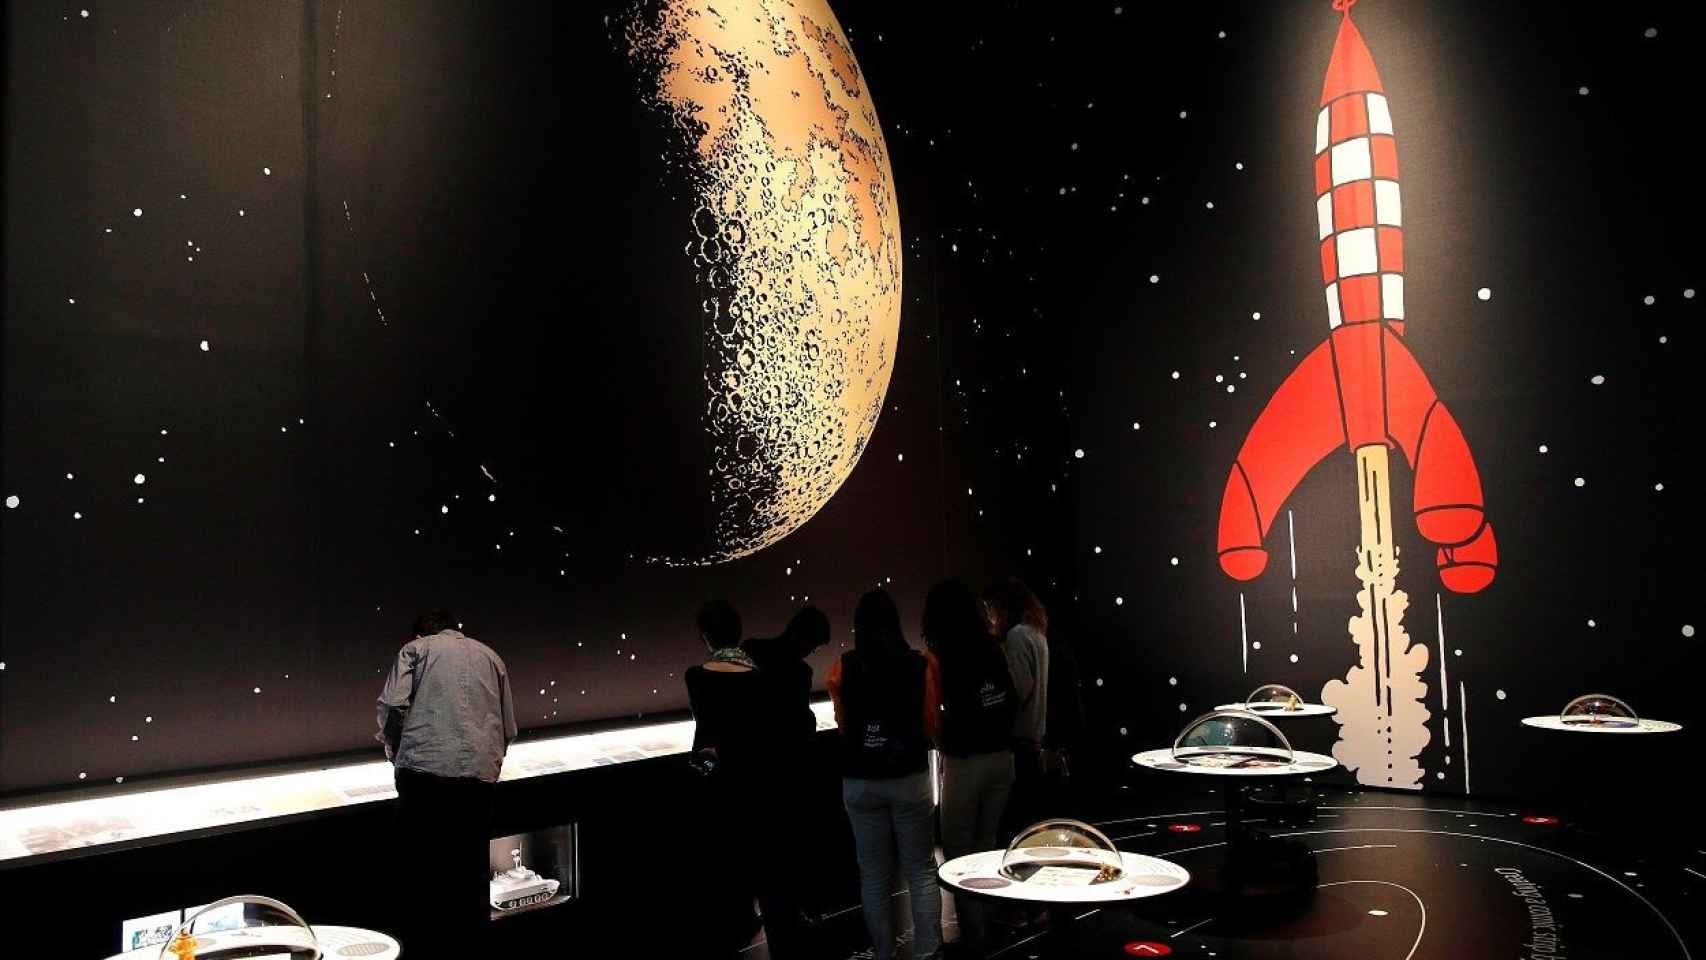 El cohete de Tíntín se perfila sobre la Luna que pisó Armstrong / EFE, Alejandro García